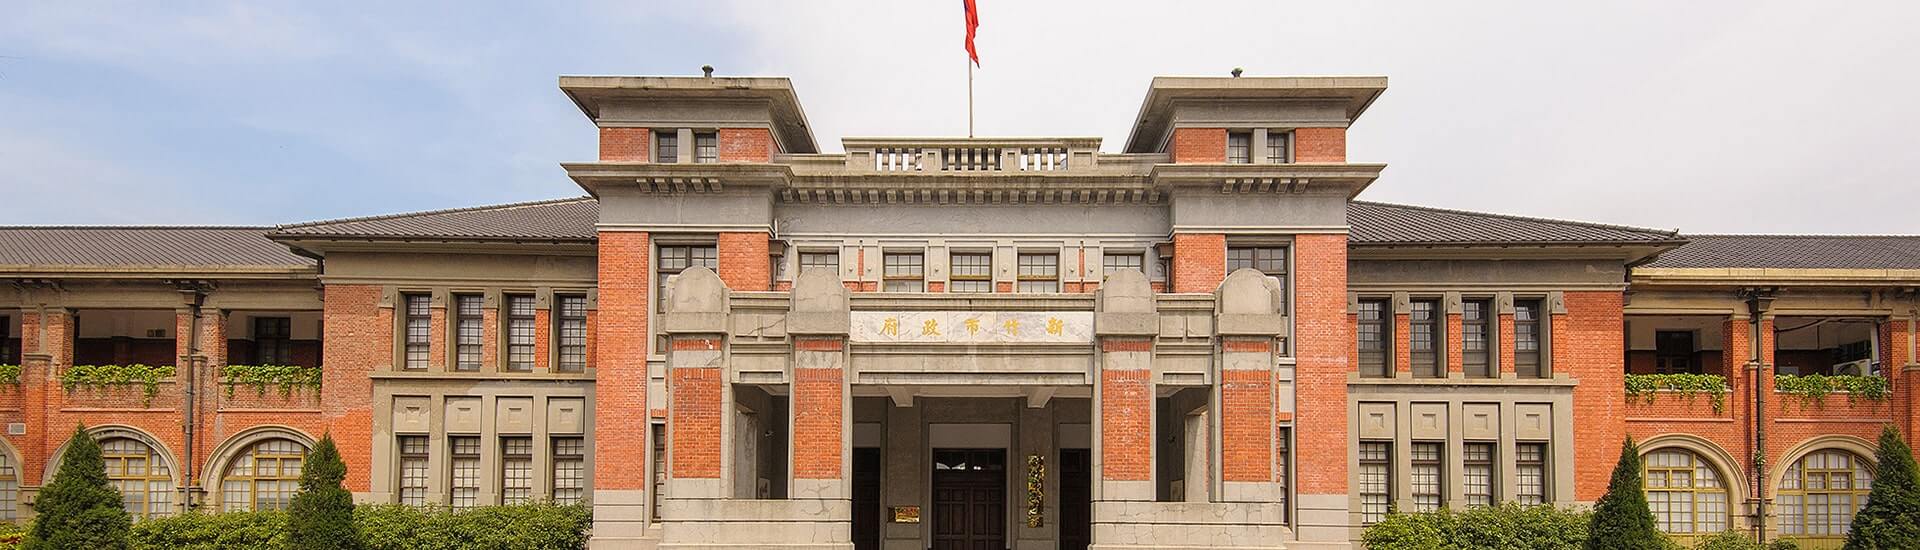 Hsinchu Municipal Government Hall